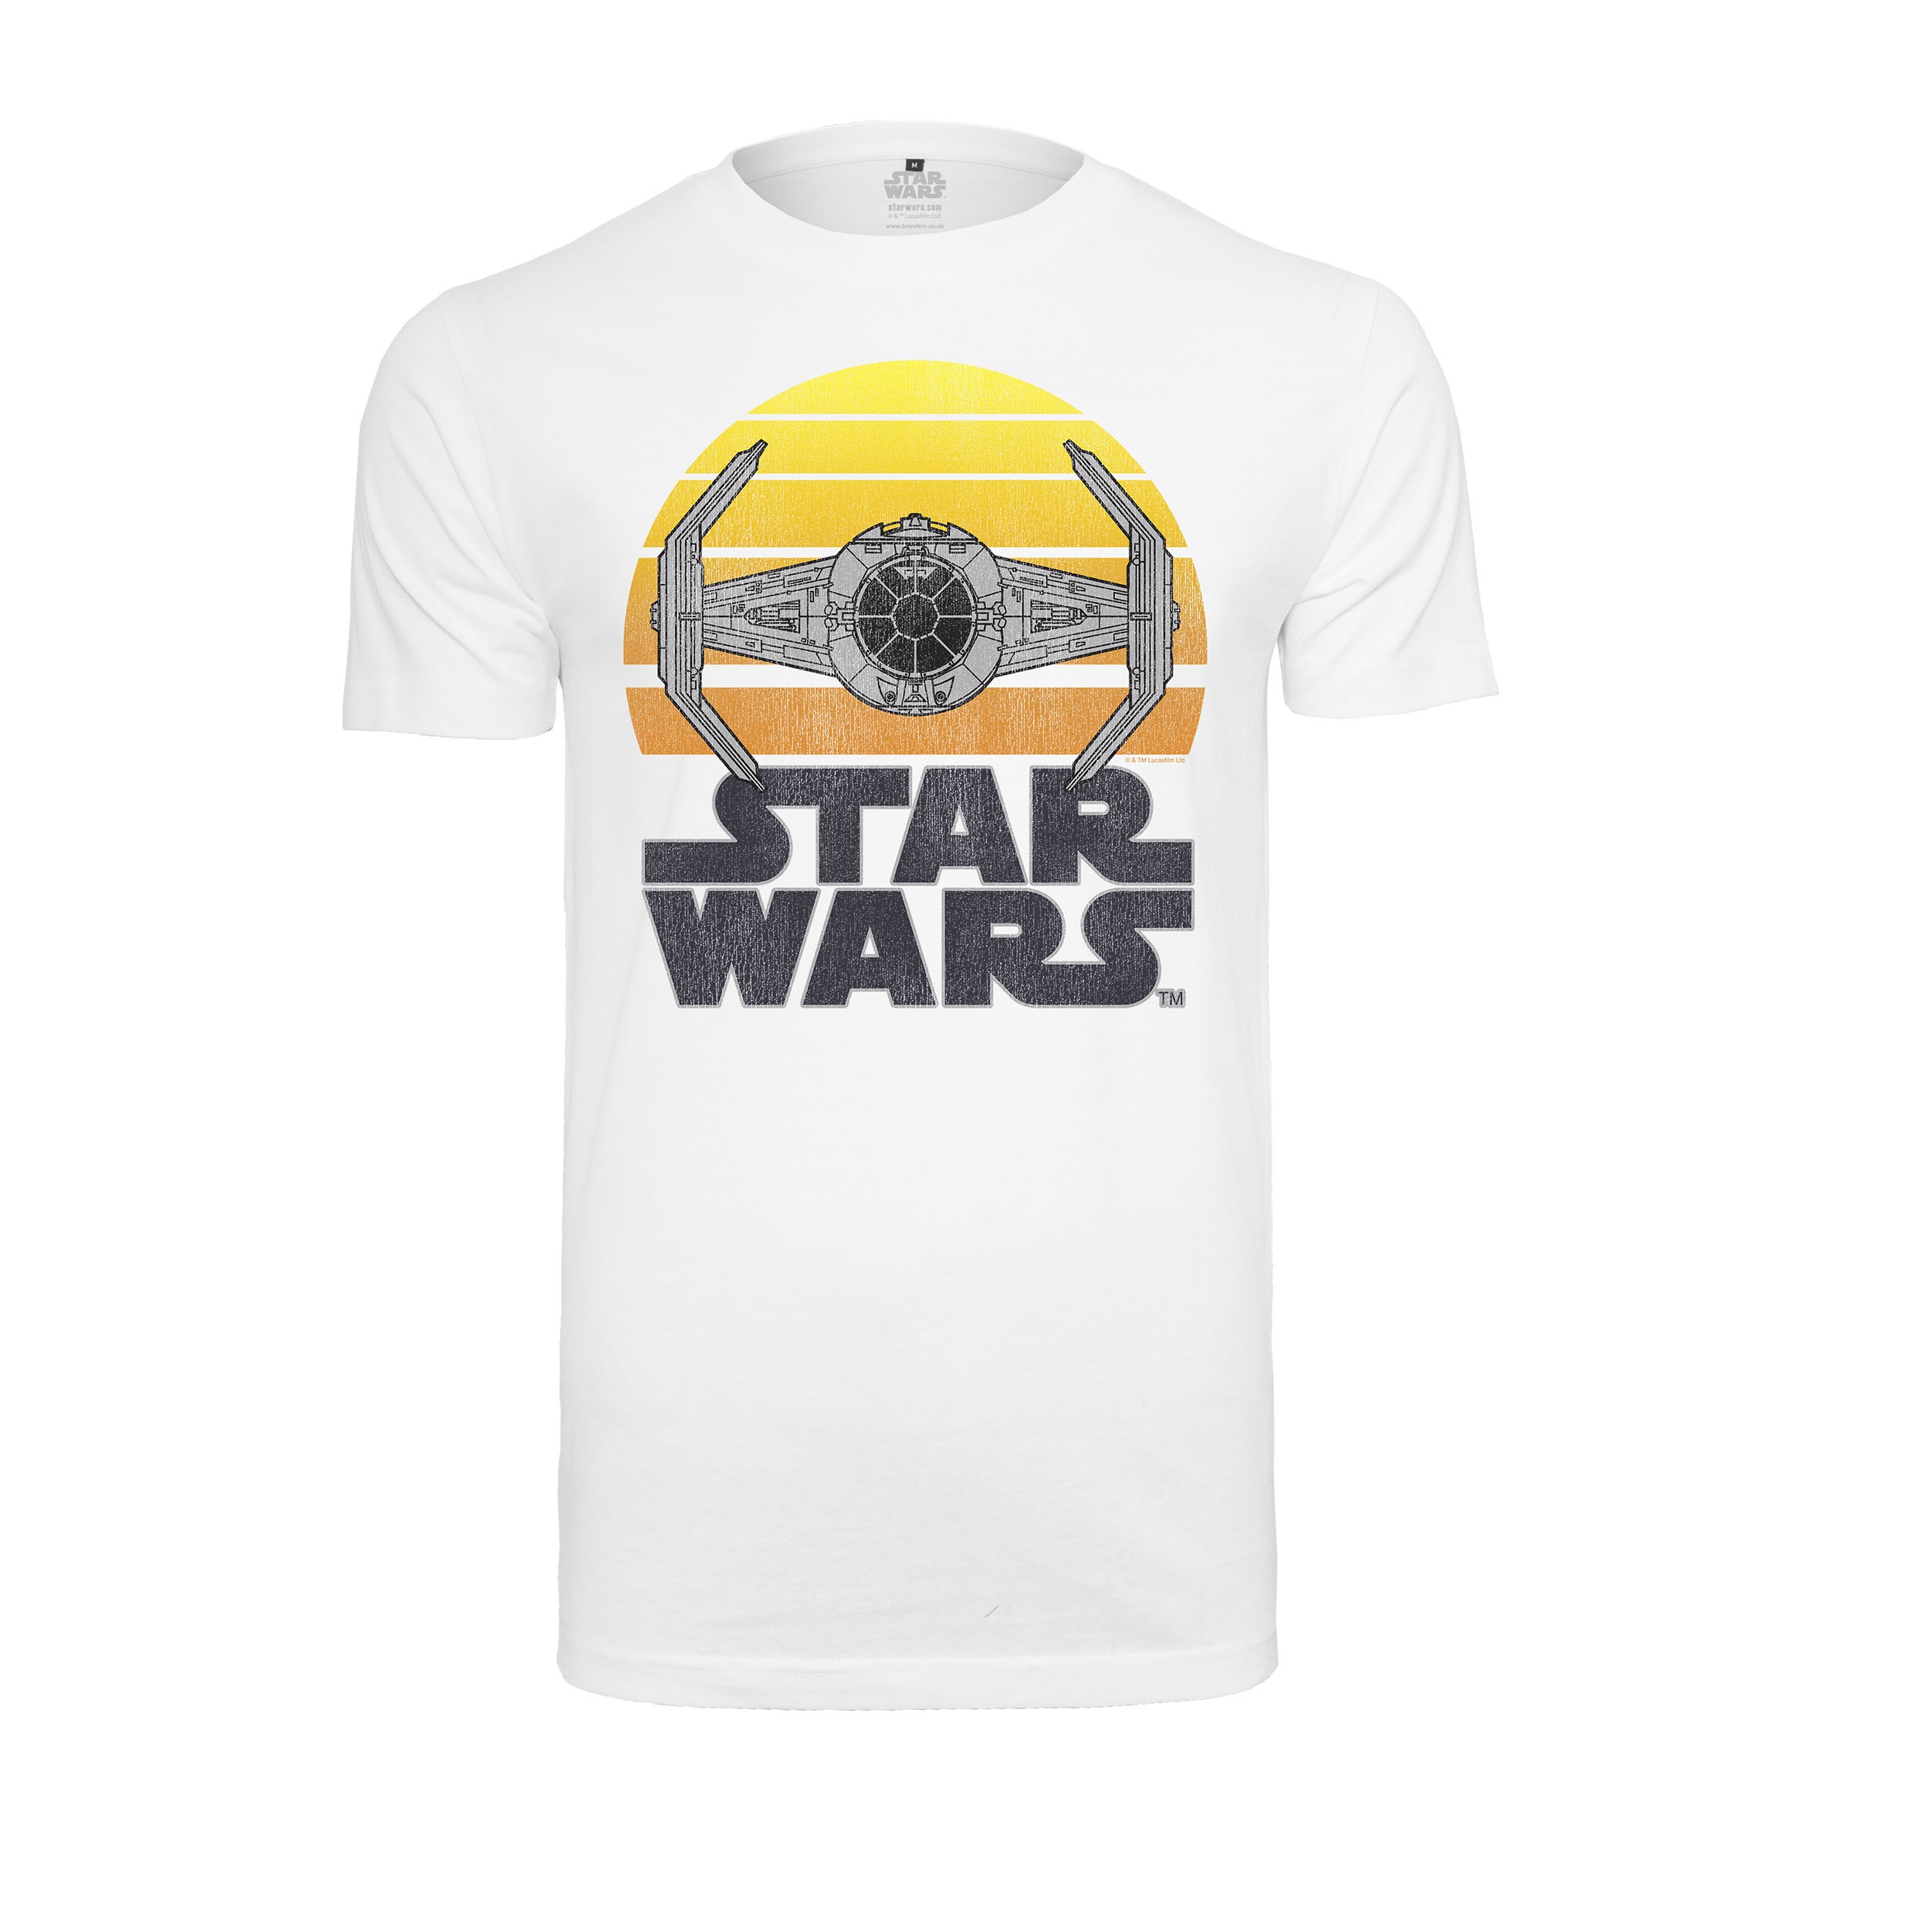 Star Wars tričko Sunset Tee Biela XL